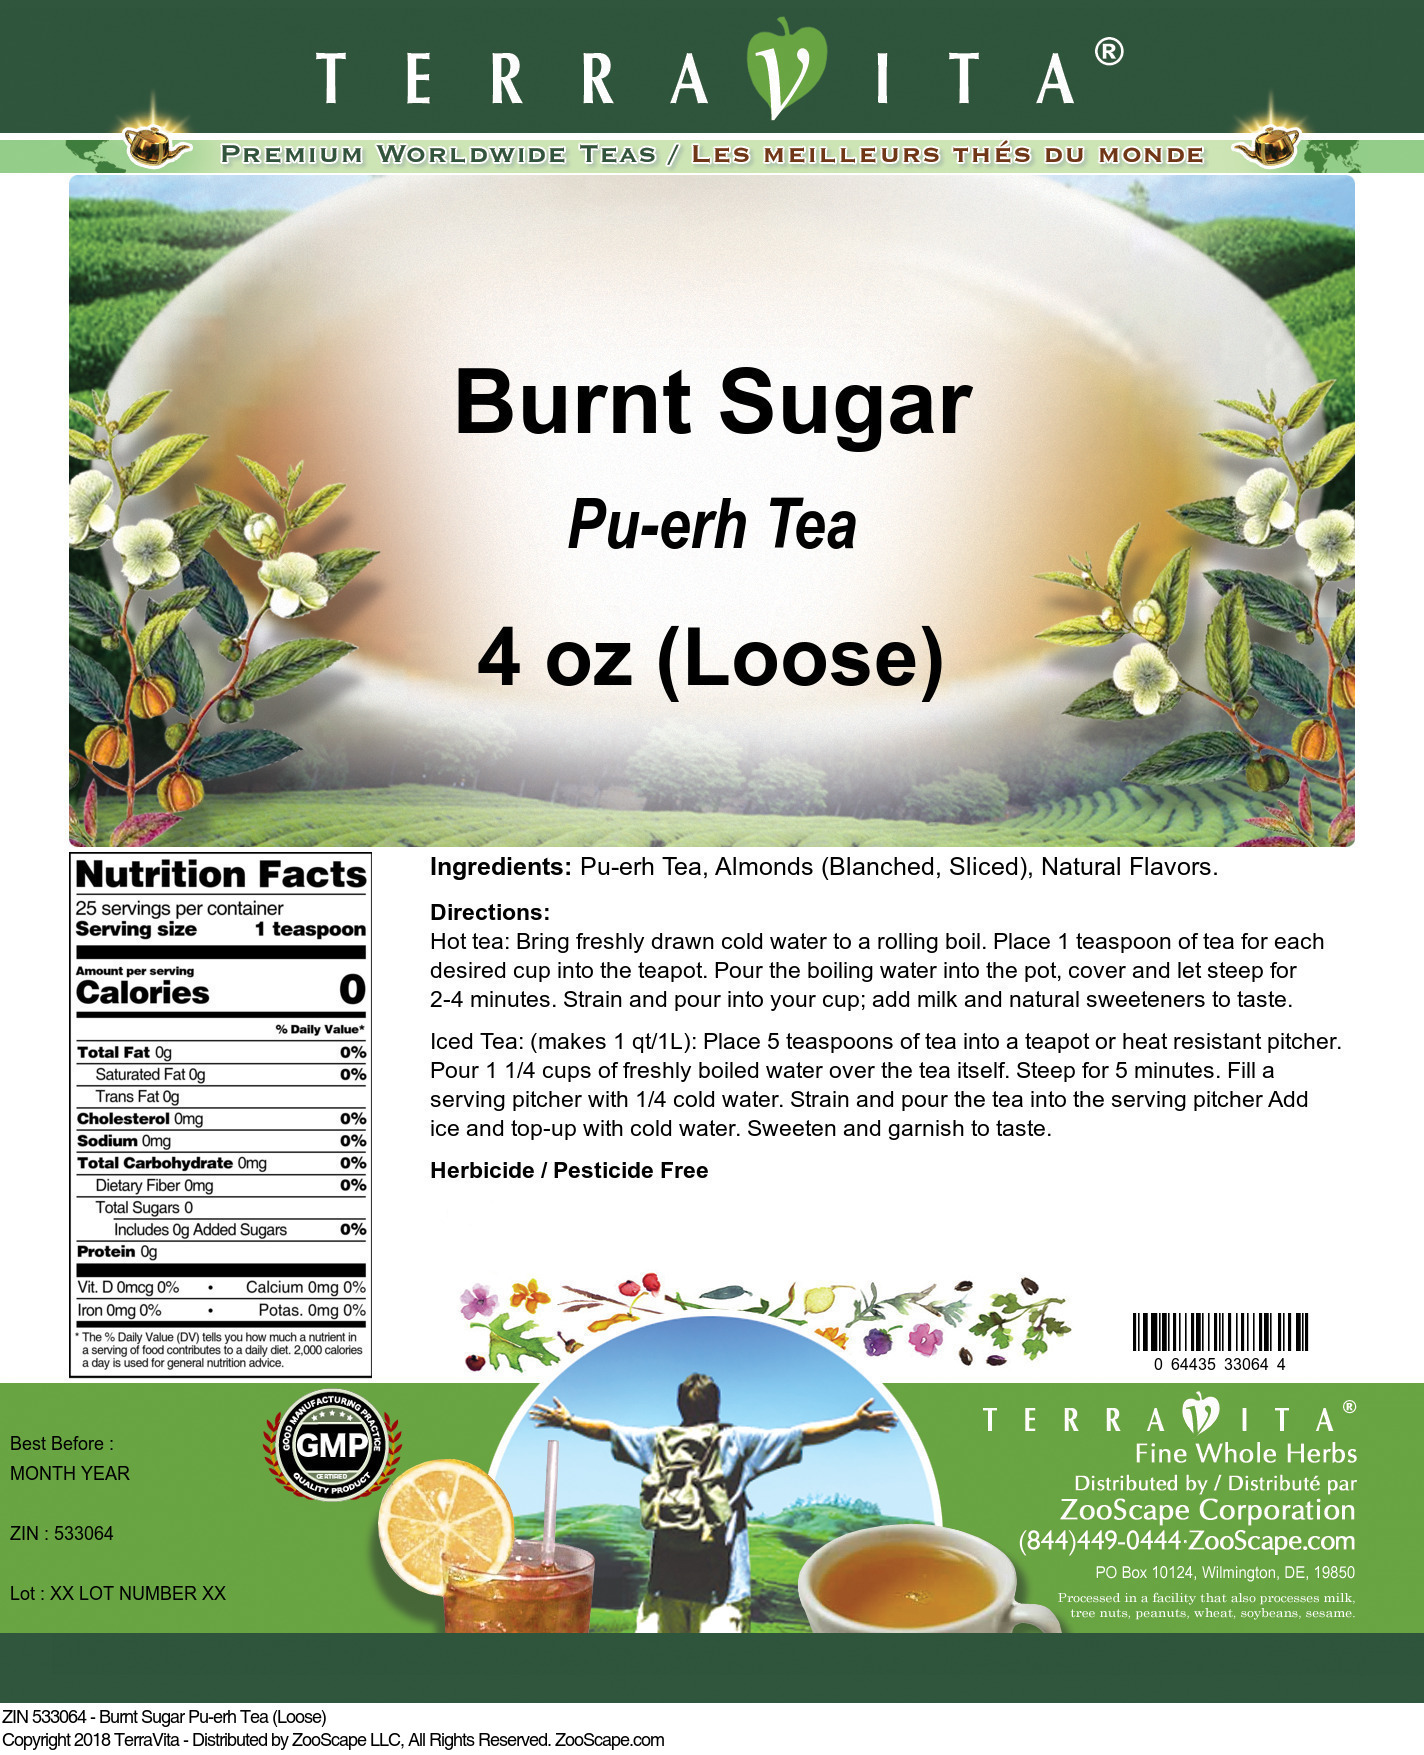 Burnt Sugar Pu-erh Tea (Loose) - Label